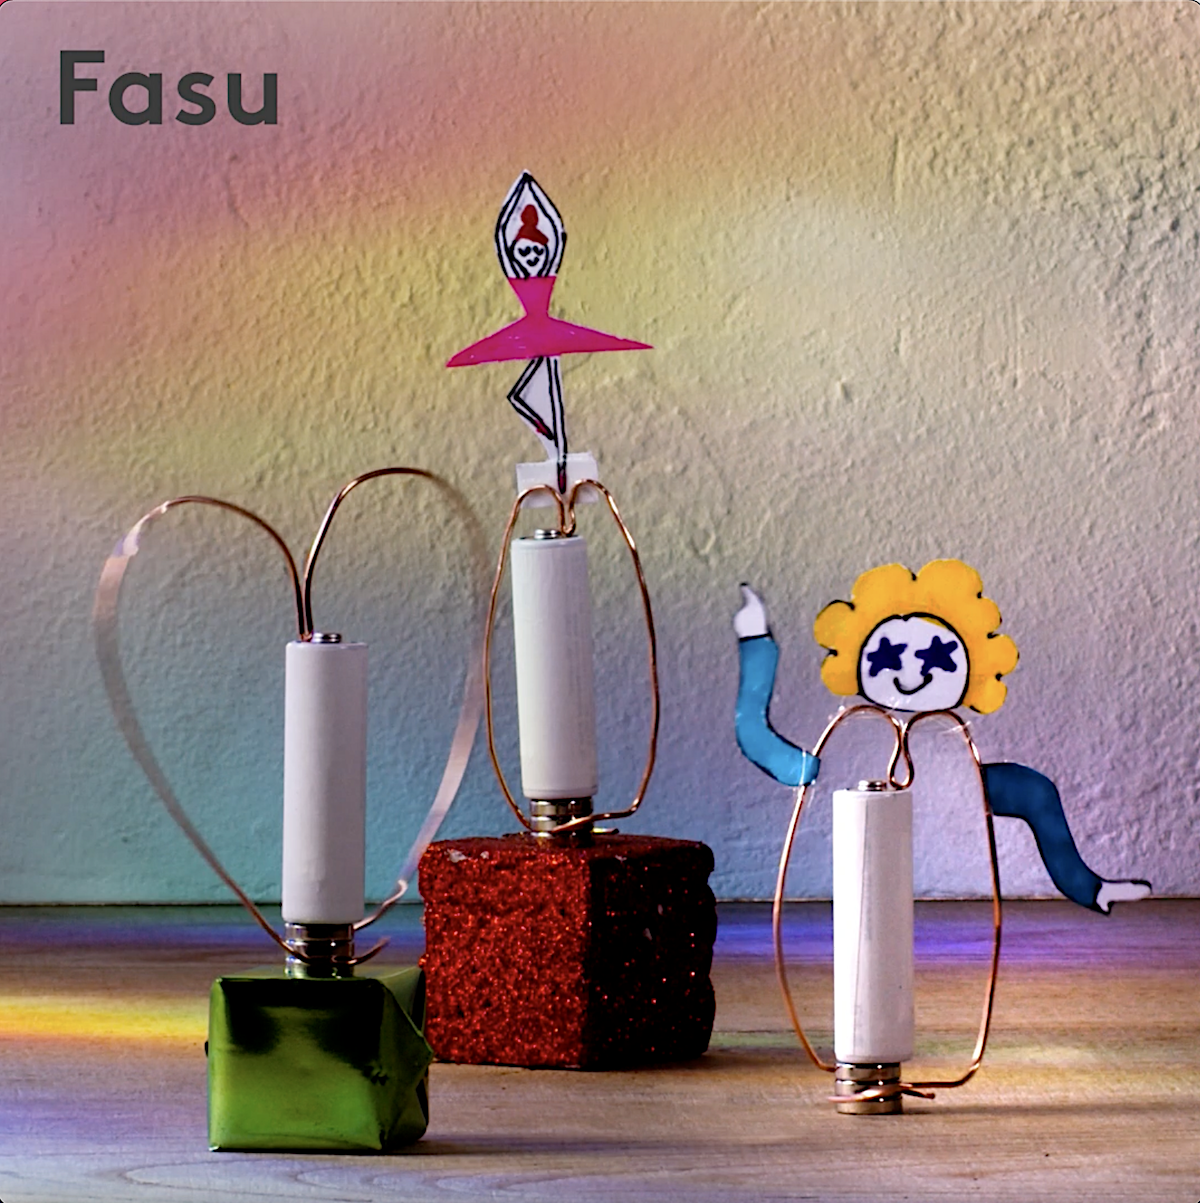 Steam工作 おもしろいほど くるくる回る 磁石と銅線 電池でつくるファンキーダンサー Fasu ファス